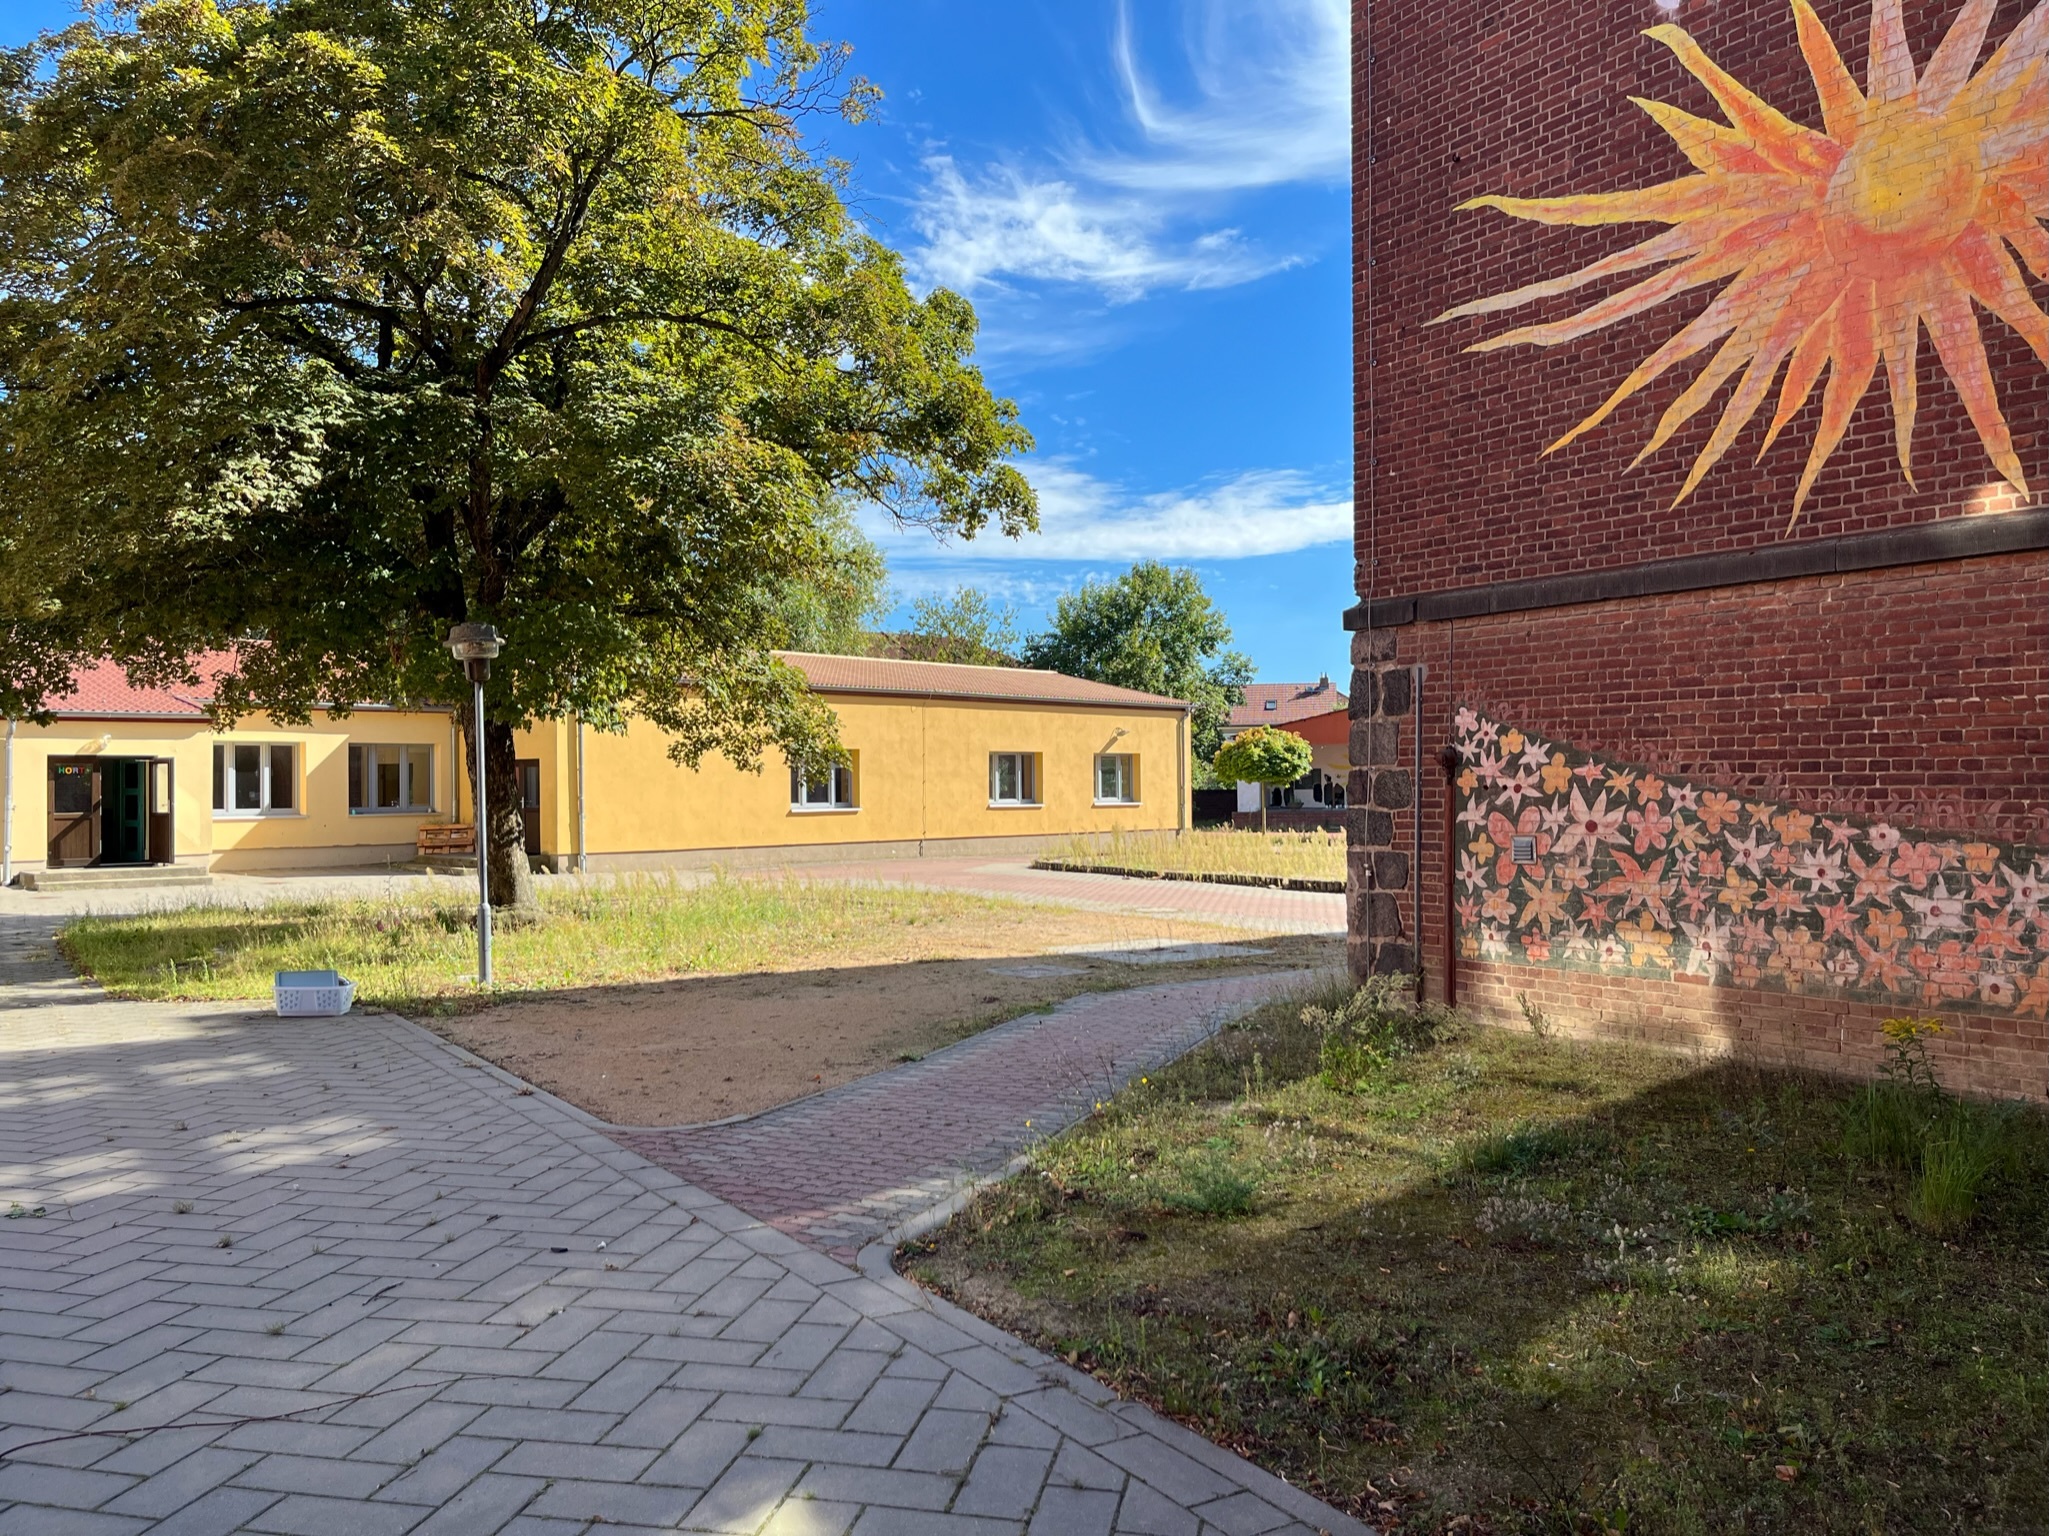 An der Nordseite des Gebäudes sorgt ein Wandbild aus DDR-Zeiten für den notwendigen Sonnenschein. - Photo: © Großraumbüro